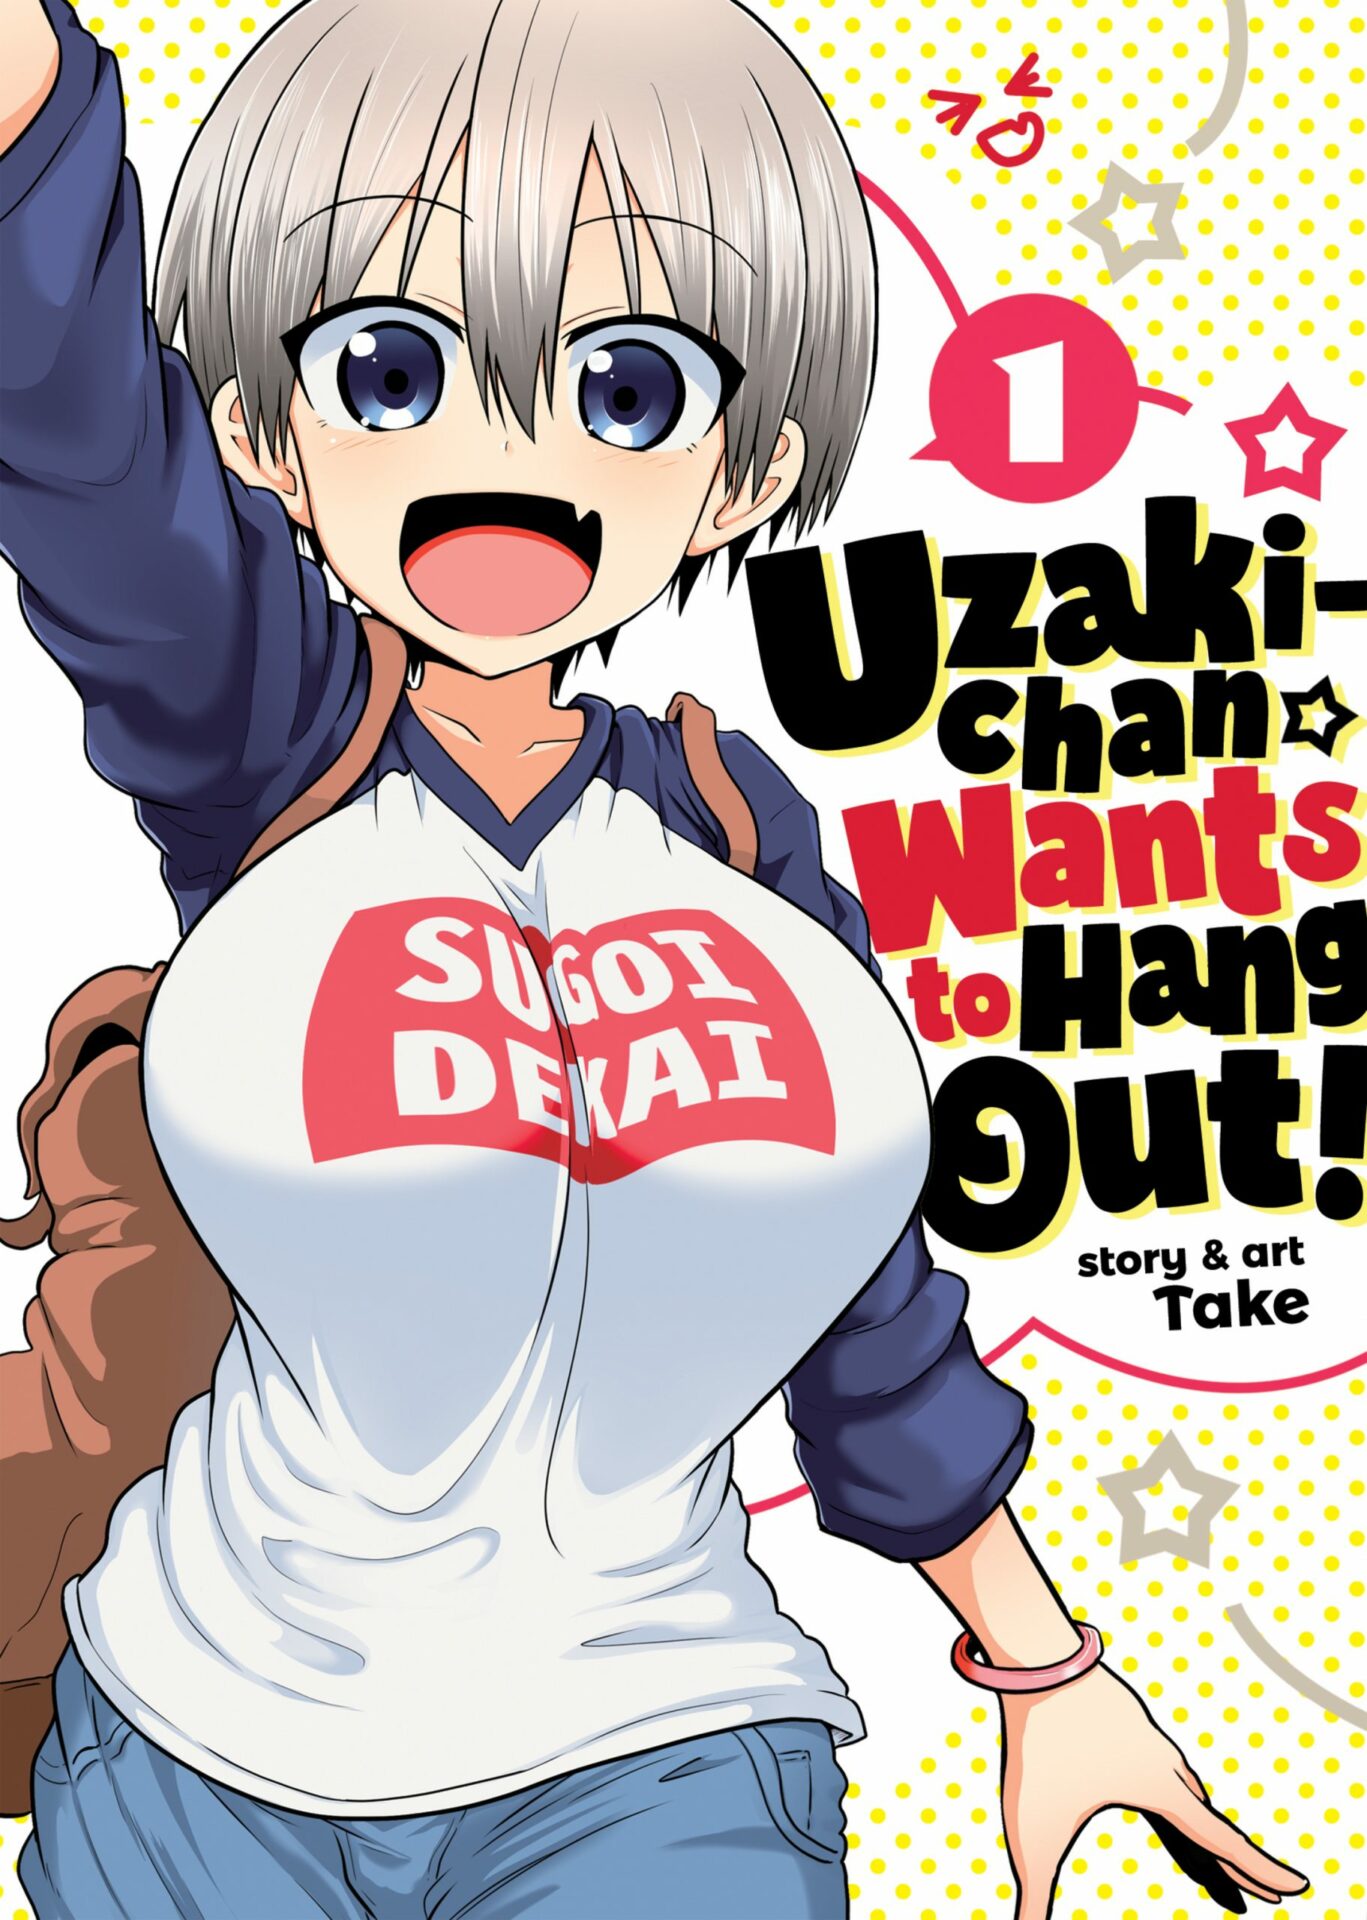 Uzaki-chan quer sair! O anime terá 12 episódios